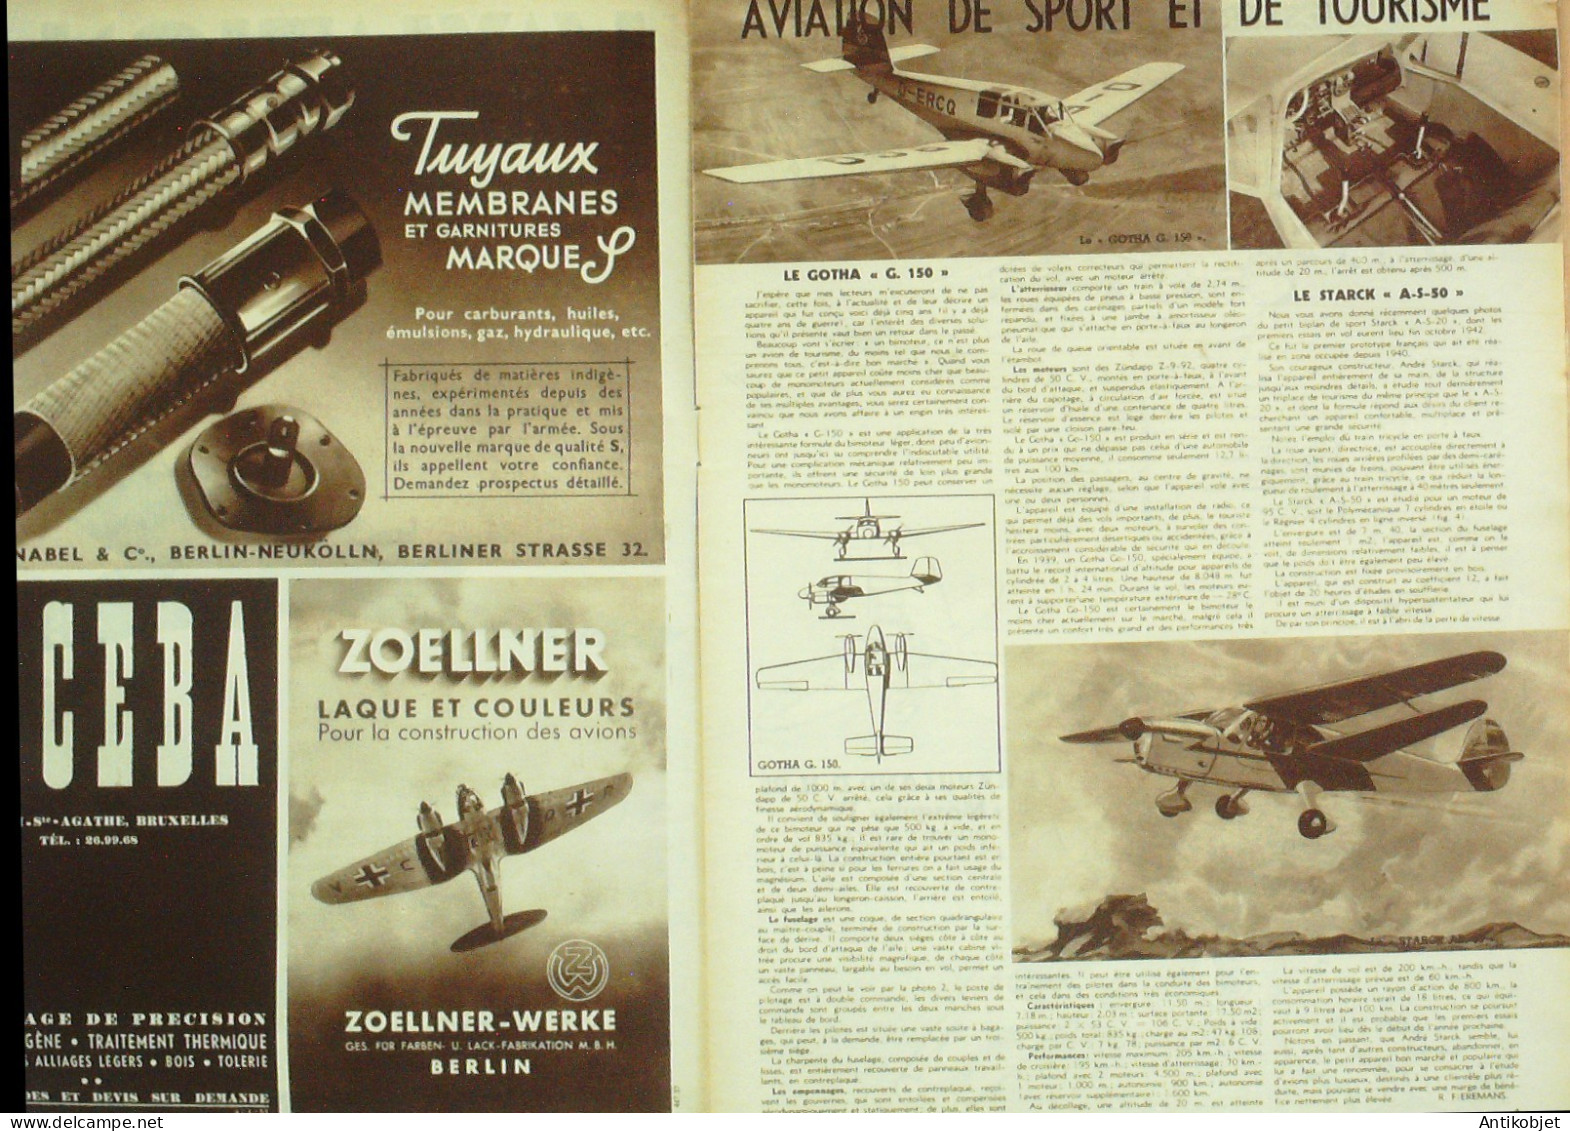 L'aviation Illustrée 1944 N° 1 Messerschmitt 323 & ME 110 Gotha G150 - Boeken